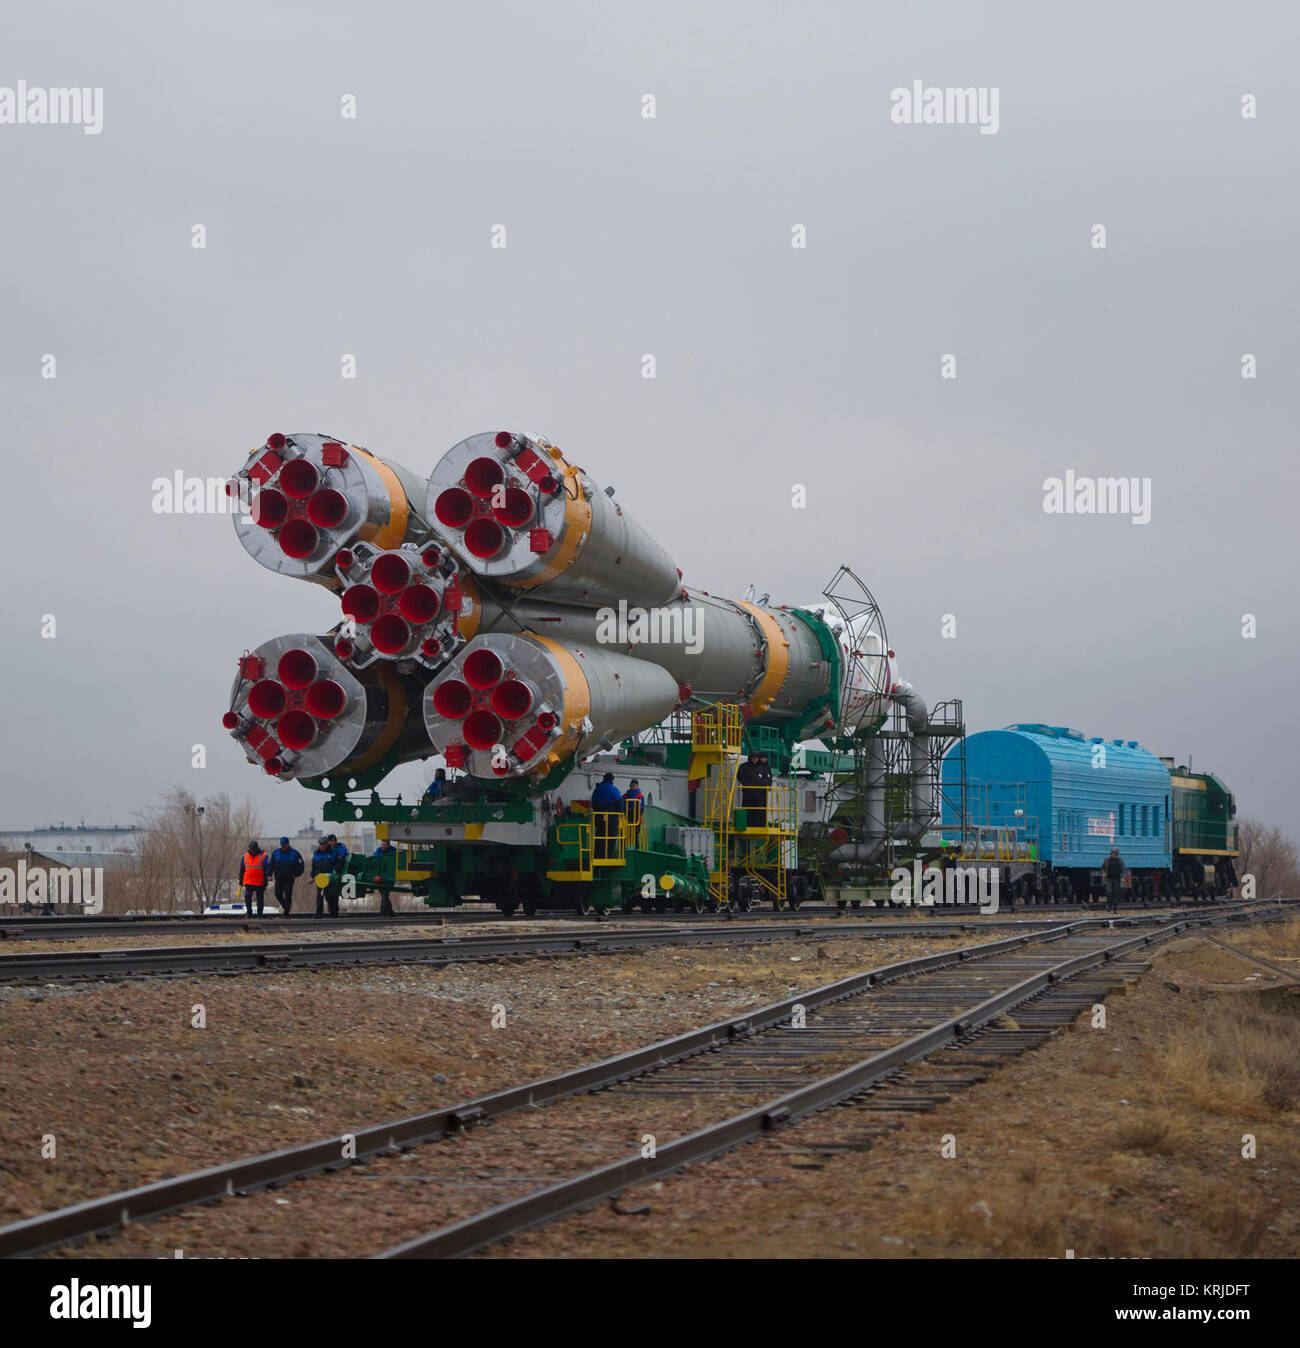 La nave espacial Soyuz TMA-21 es arrollada por el tren en su camino a la plataforma de lanzamiento en el cosmódromo de Baikonur en Kazajstán, el sábado, 2 de abril de 2011. El lanzamiento de la nave Soyuz con expedición Soyuz 27 Comandante Alexander Samokutyaev, ingeniero de vuelo de la NASA Ron Garan y el ingeniero de vuelo ruso Andrey Borisenko está prevista para el Martes, 5 de abril de 2011. Crédito de la foto (NASA/Carla Cioffi) Soyuz TMA-21 naves espaciales se desenrolle en tren Foto de stock